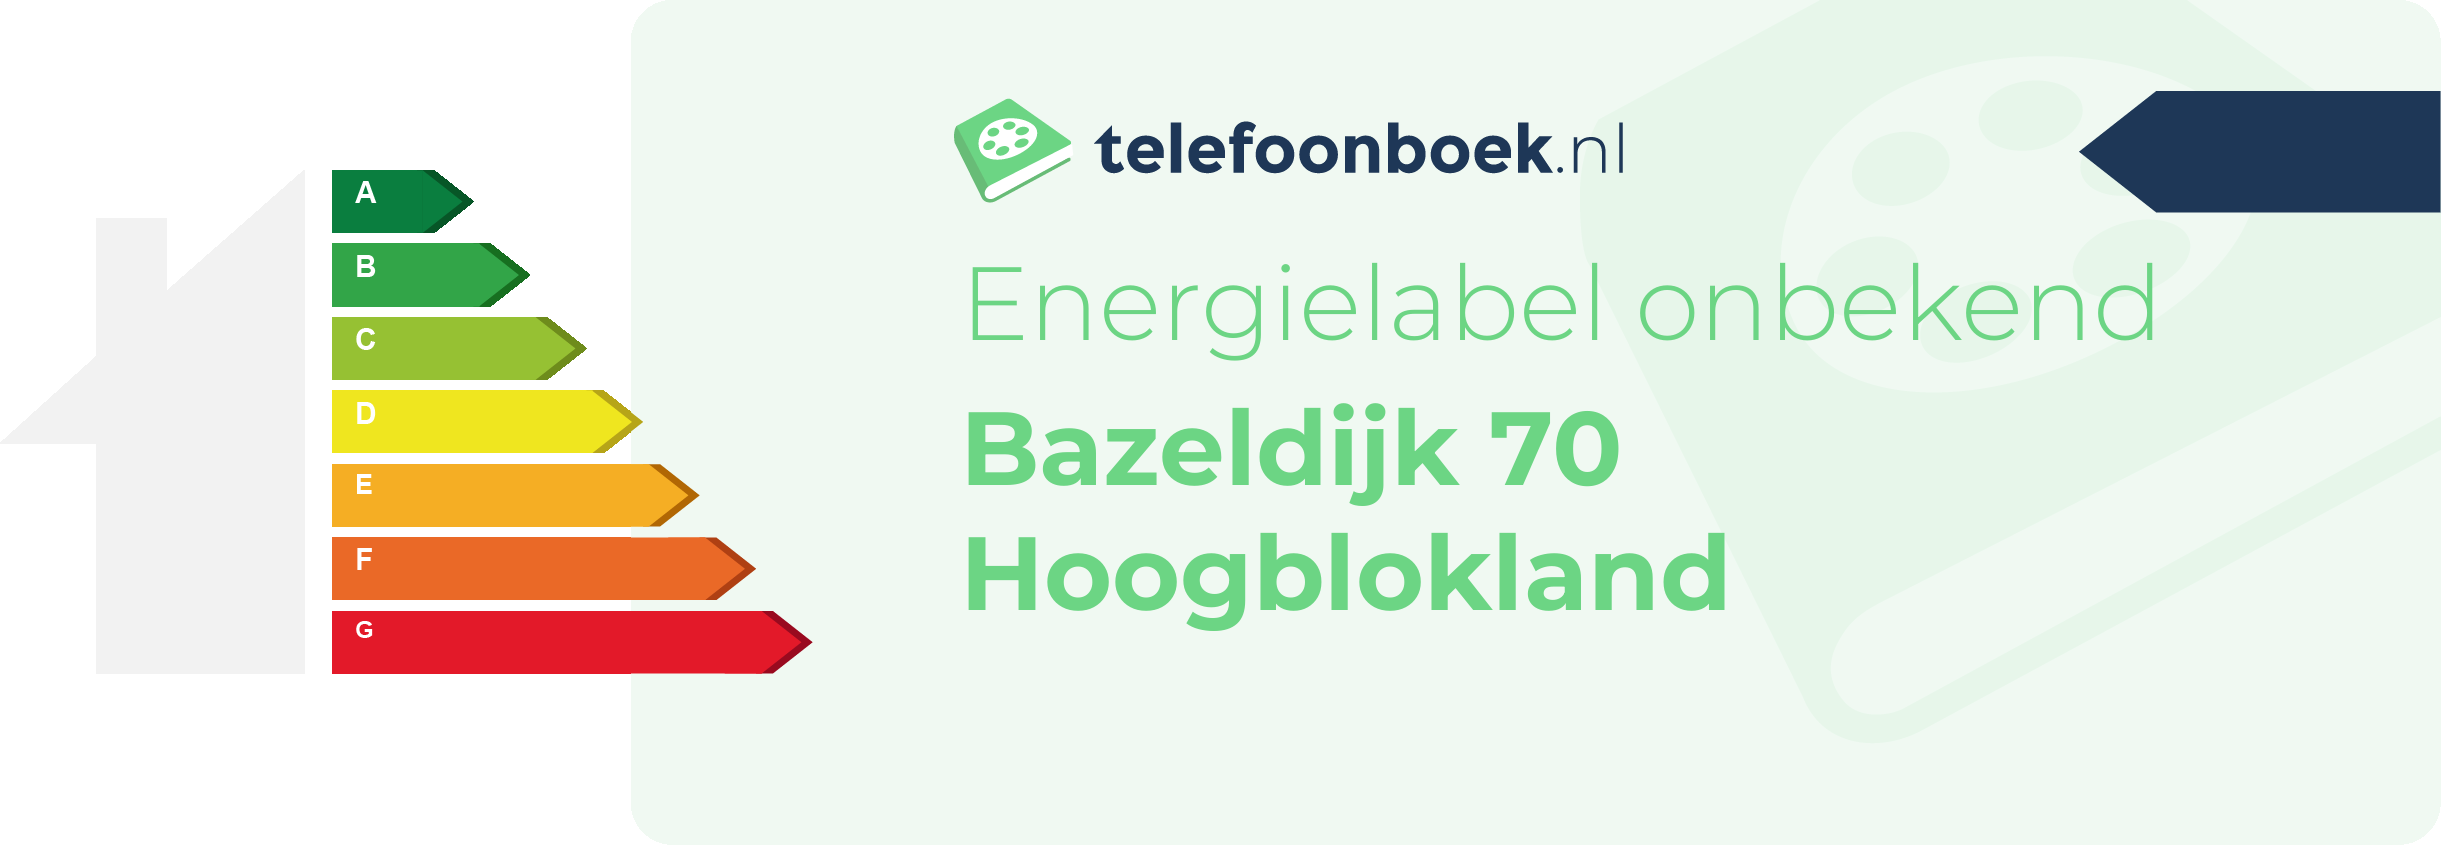 Energielabel Bazeldijk 70 Hoogblokland